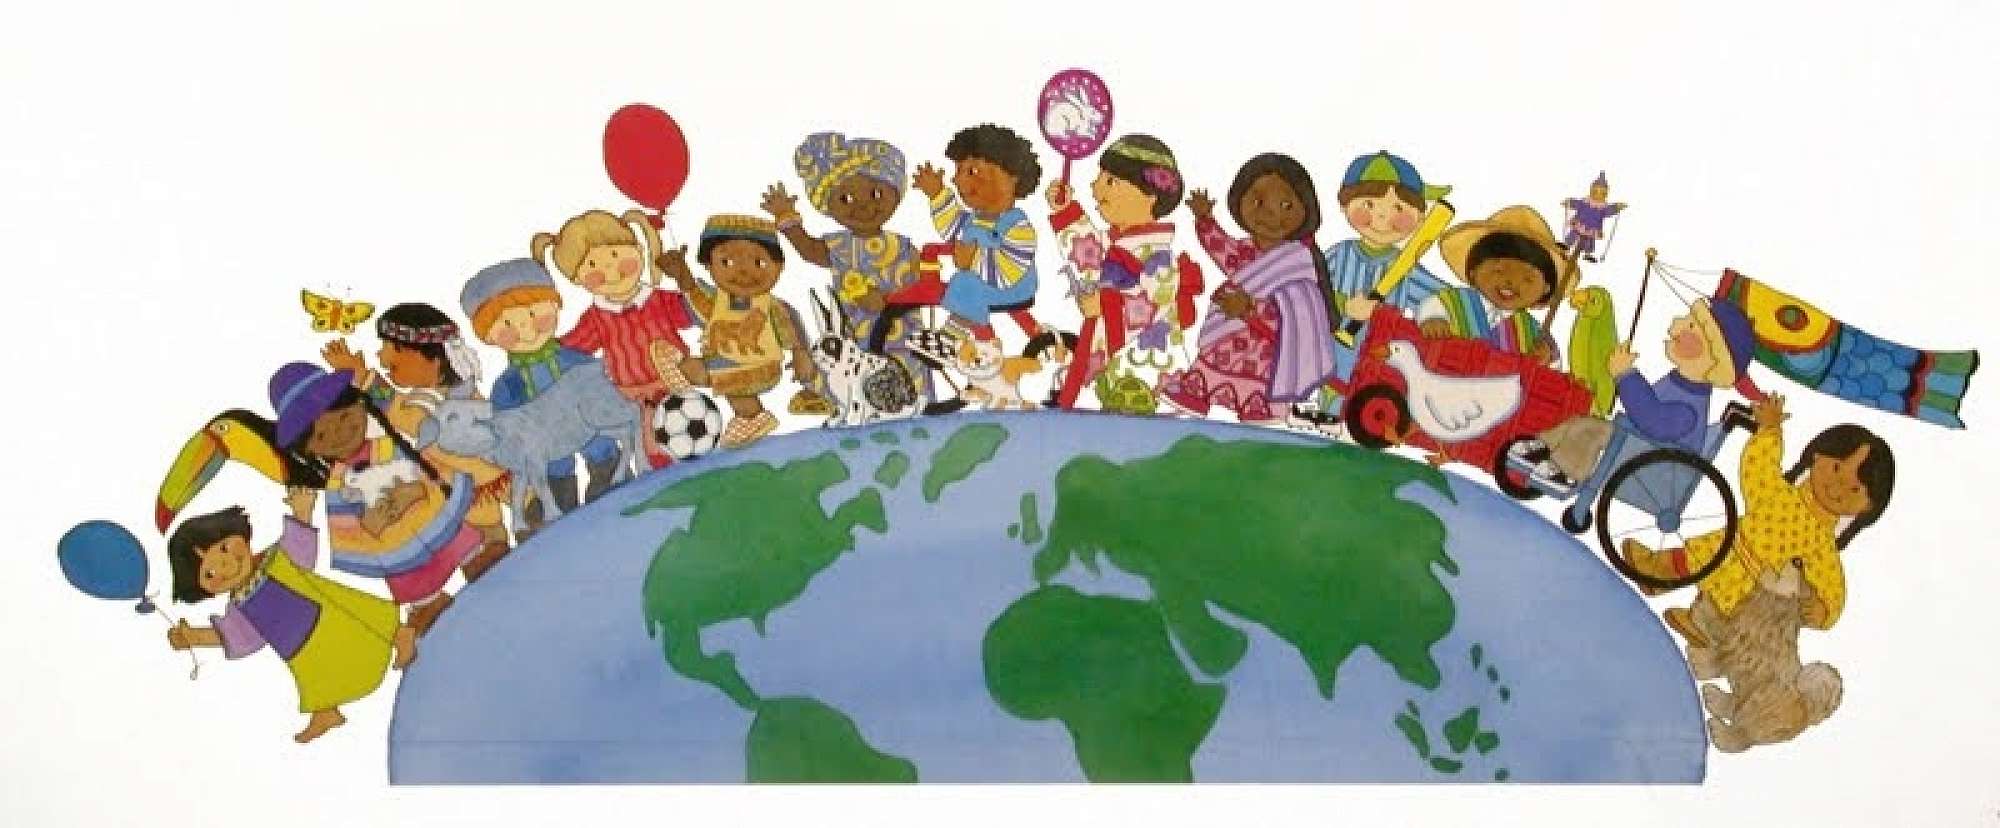 Cultures around. Народы земли. Дружба детей разных народов. Мир народам.